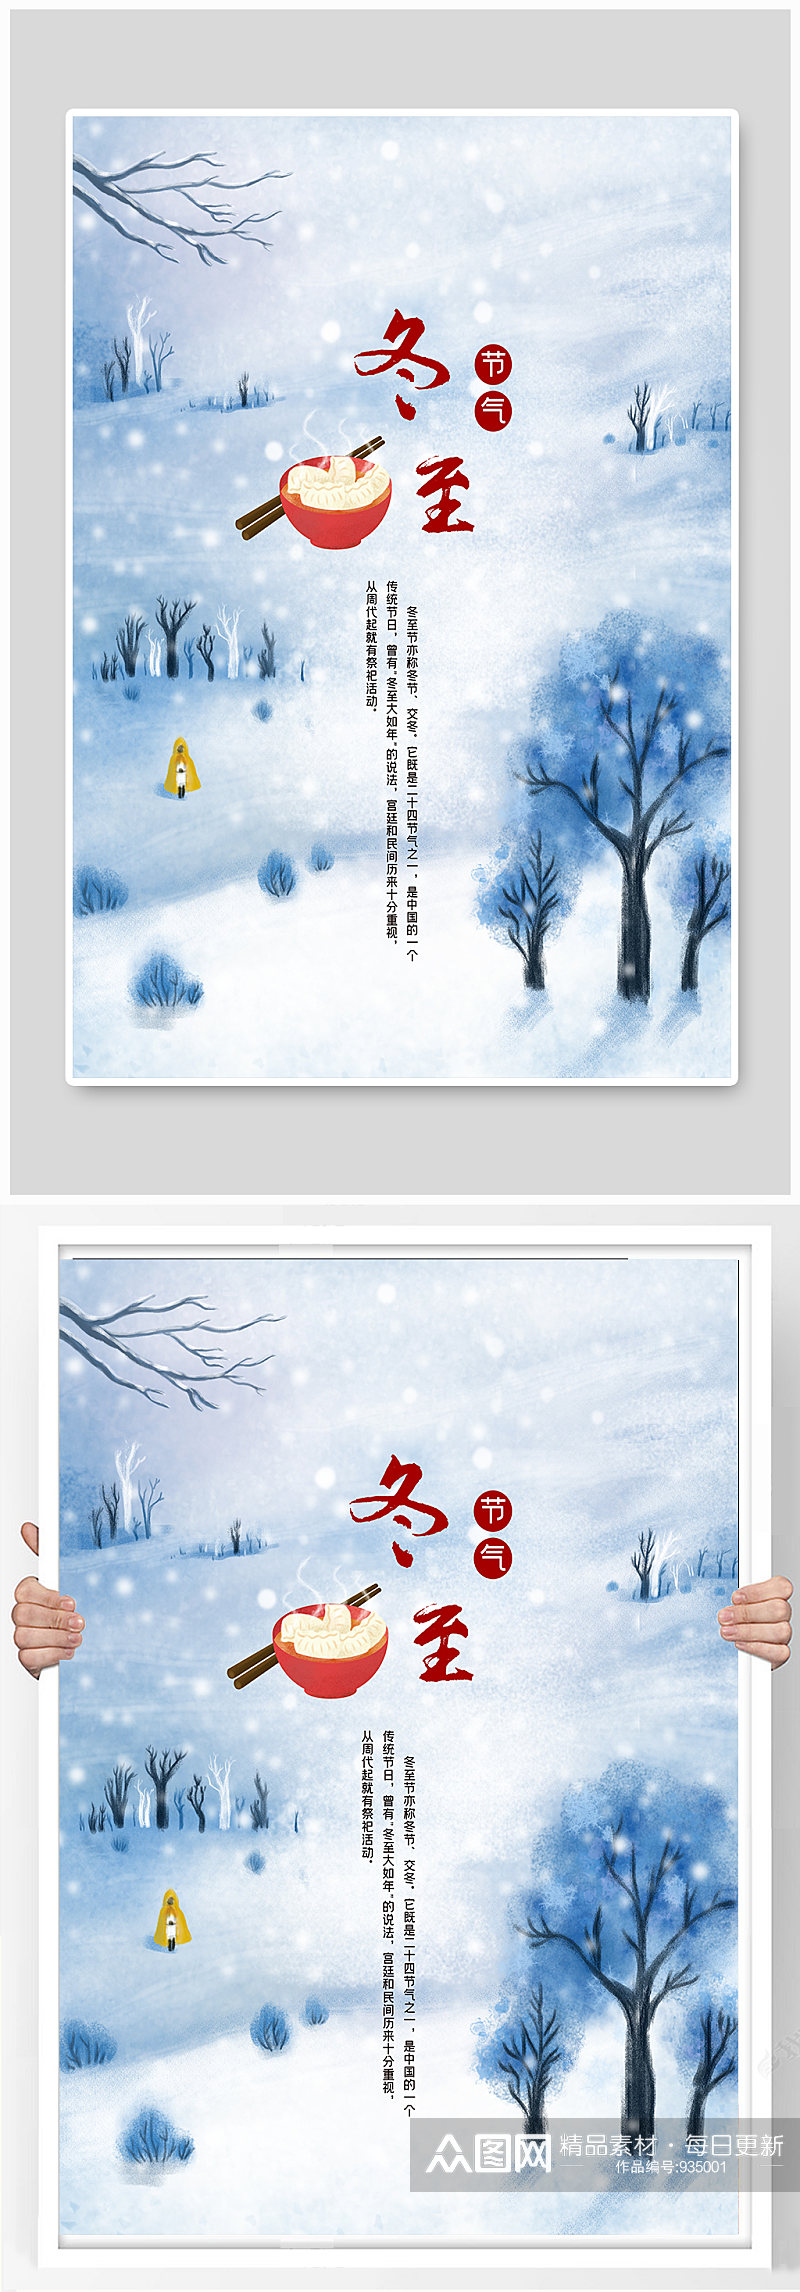 冬至节气雪天饺子手绘海报素材